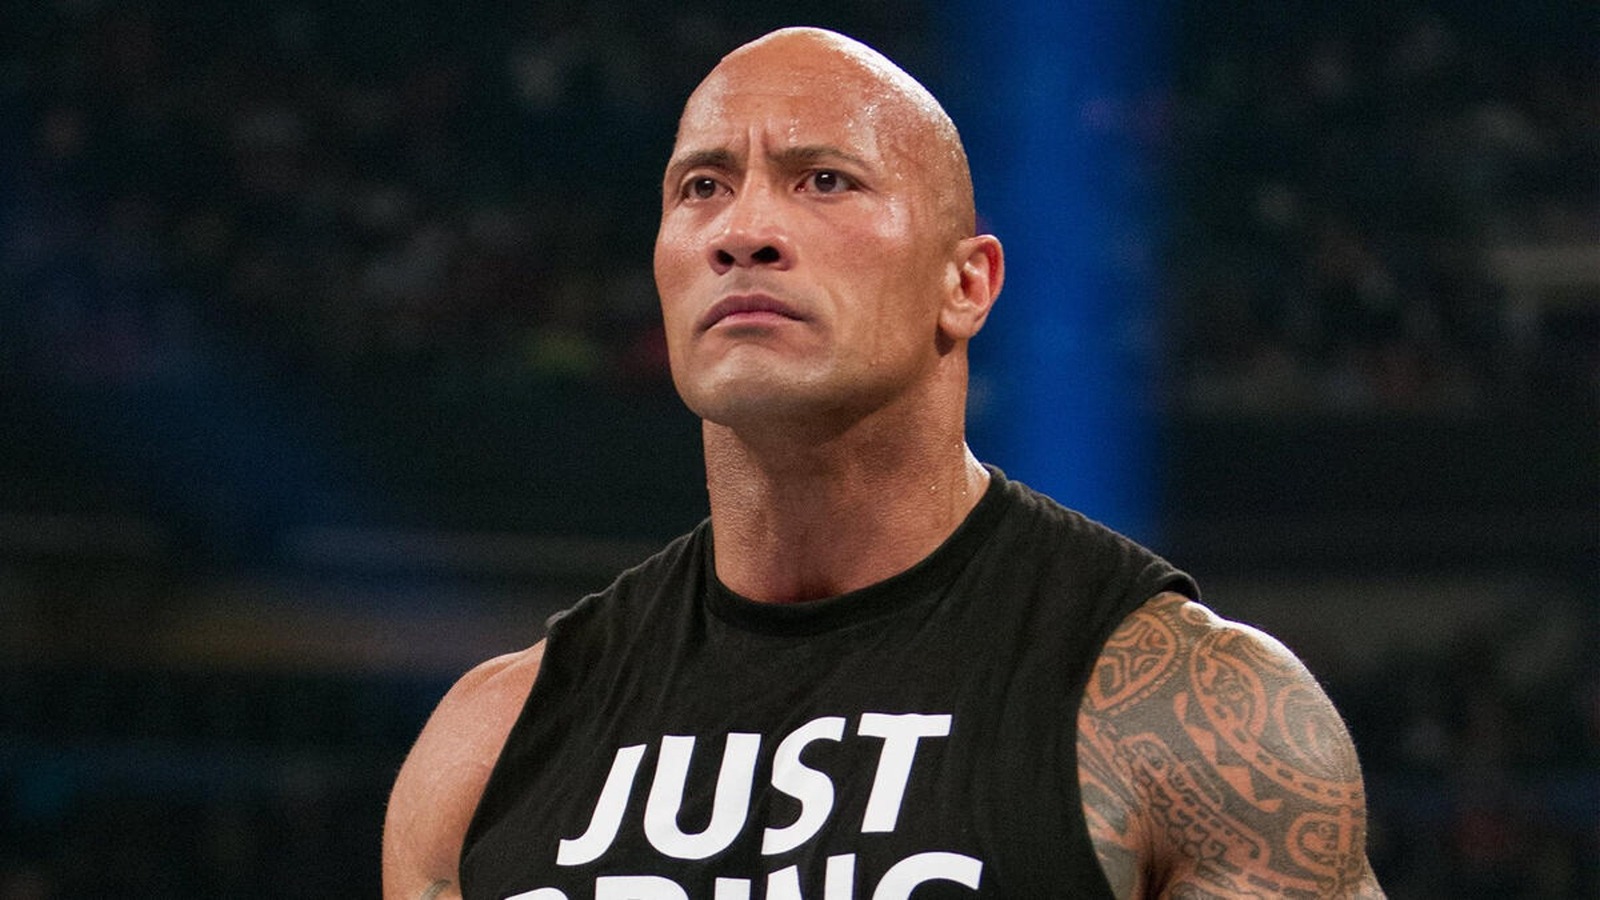 La estrella de la WWE, The Rock, revela uno de sus arrepentimientos en la vida